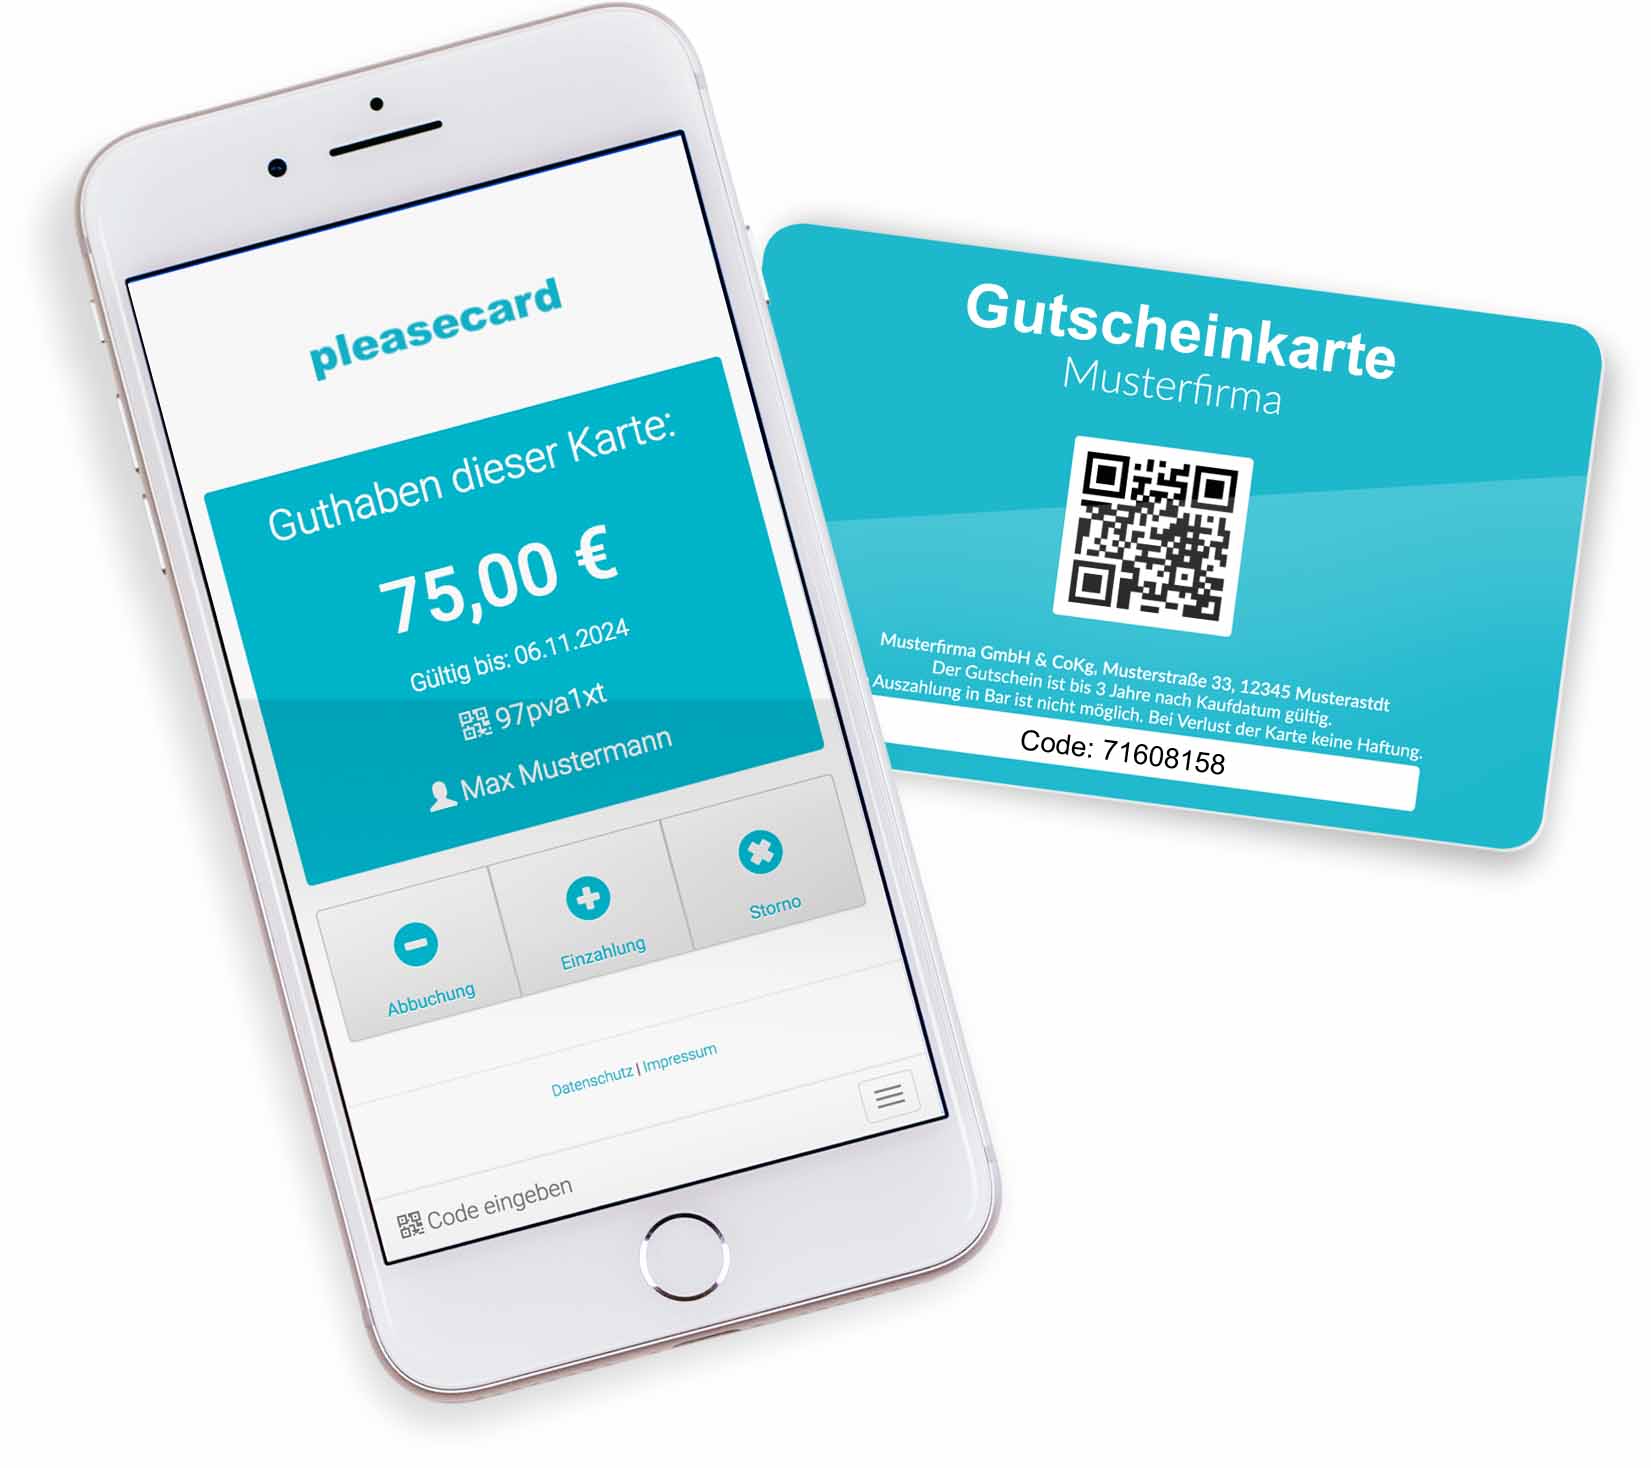 Anbieter für Gutscheinkarten im Scheckkartenformat (Kreditkartenformat) mit Gutscheinkarten-System für den Einzelhandel